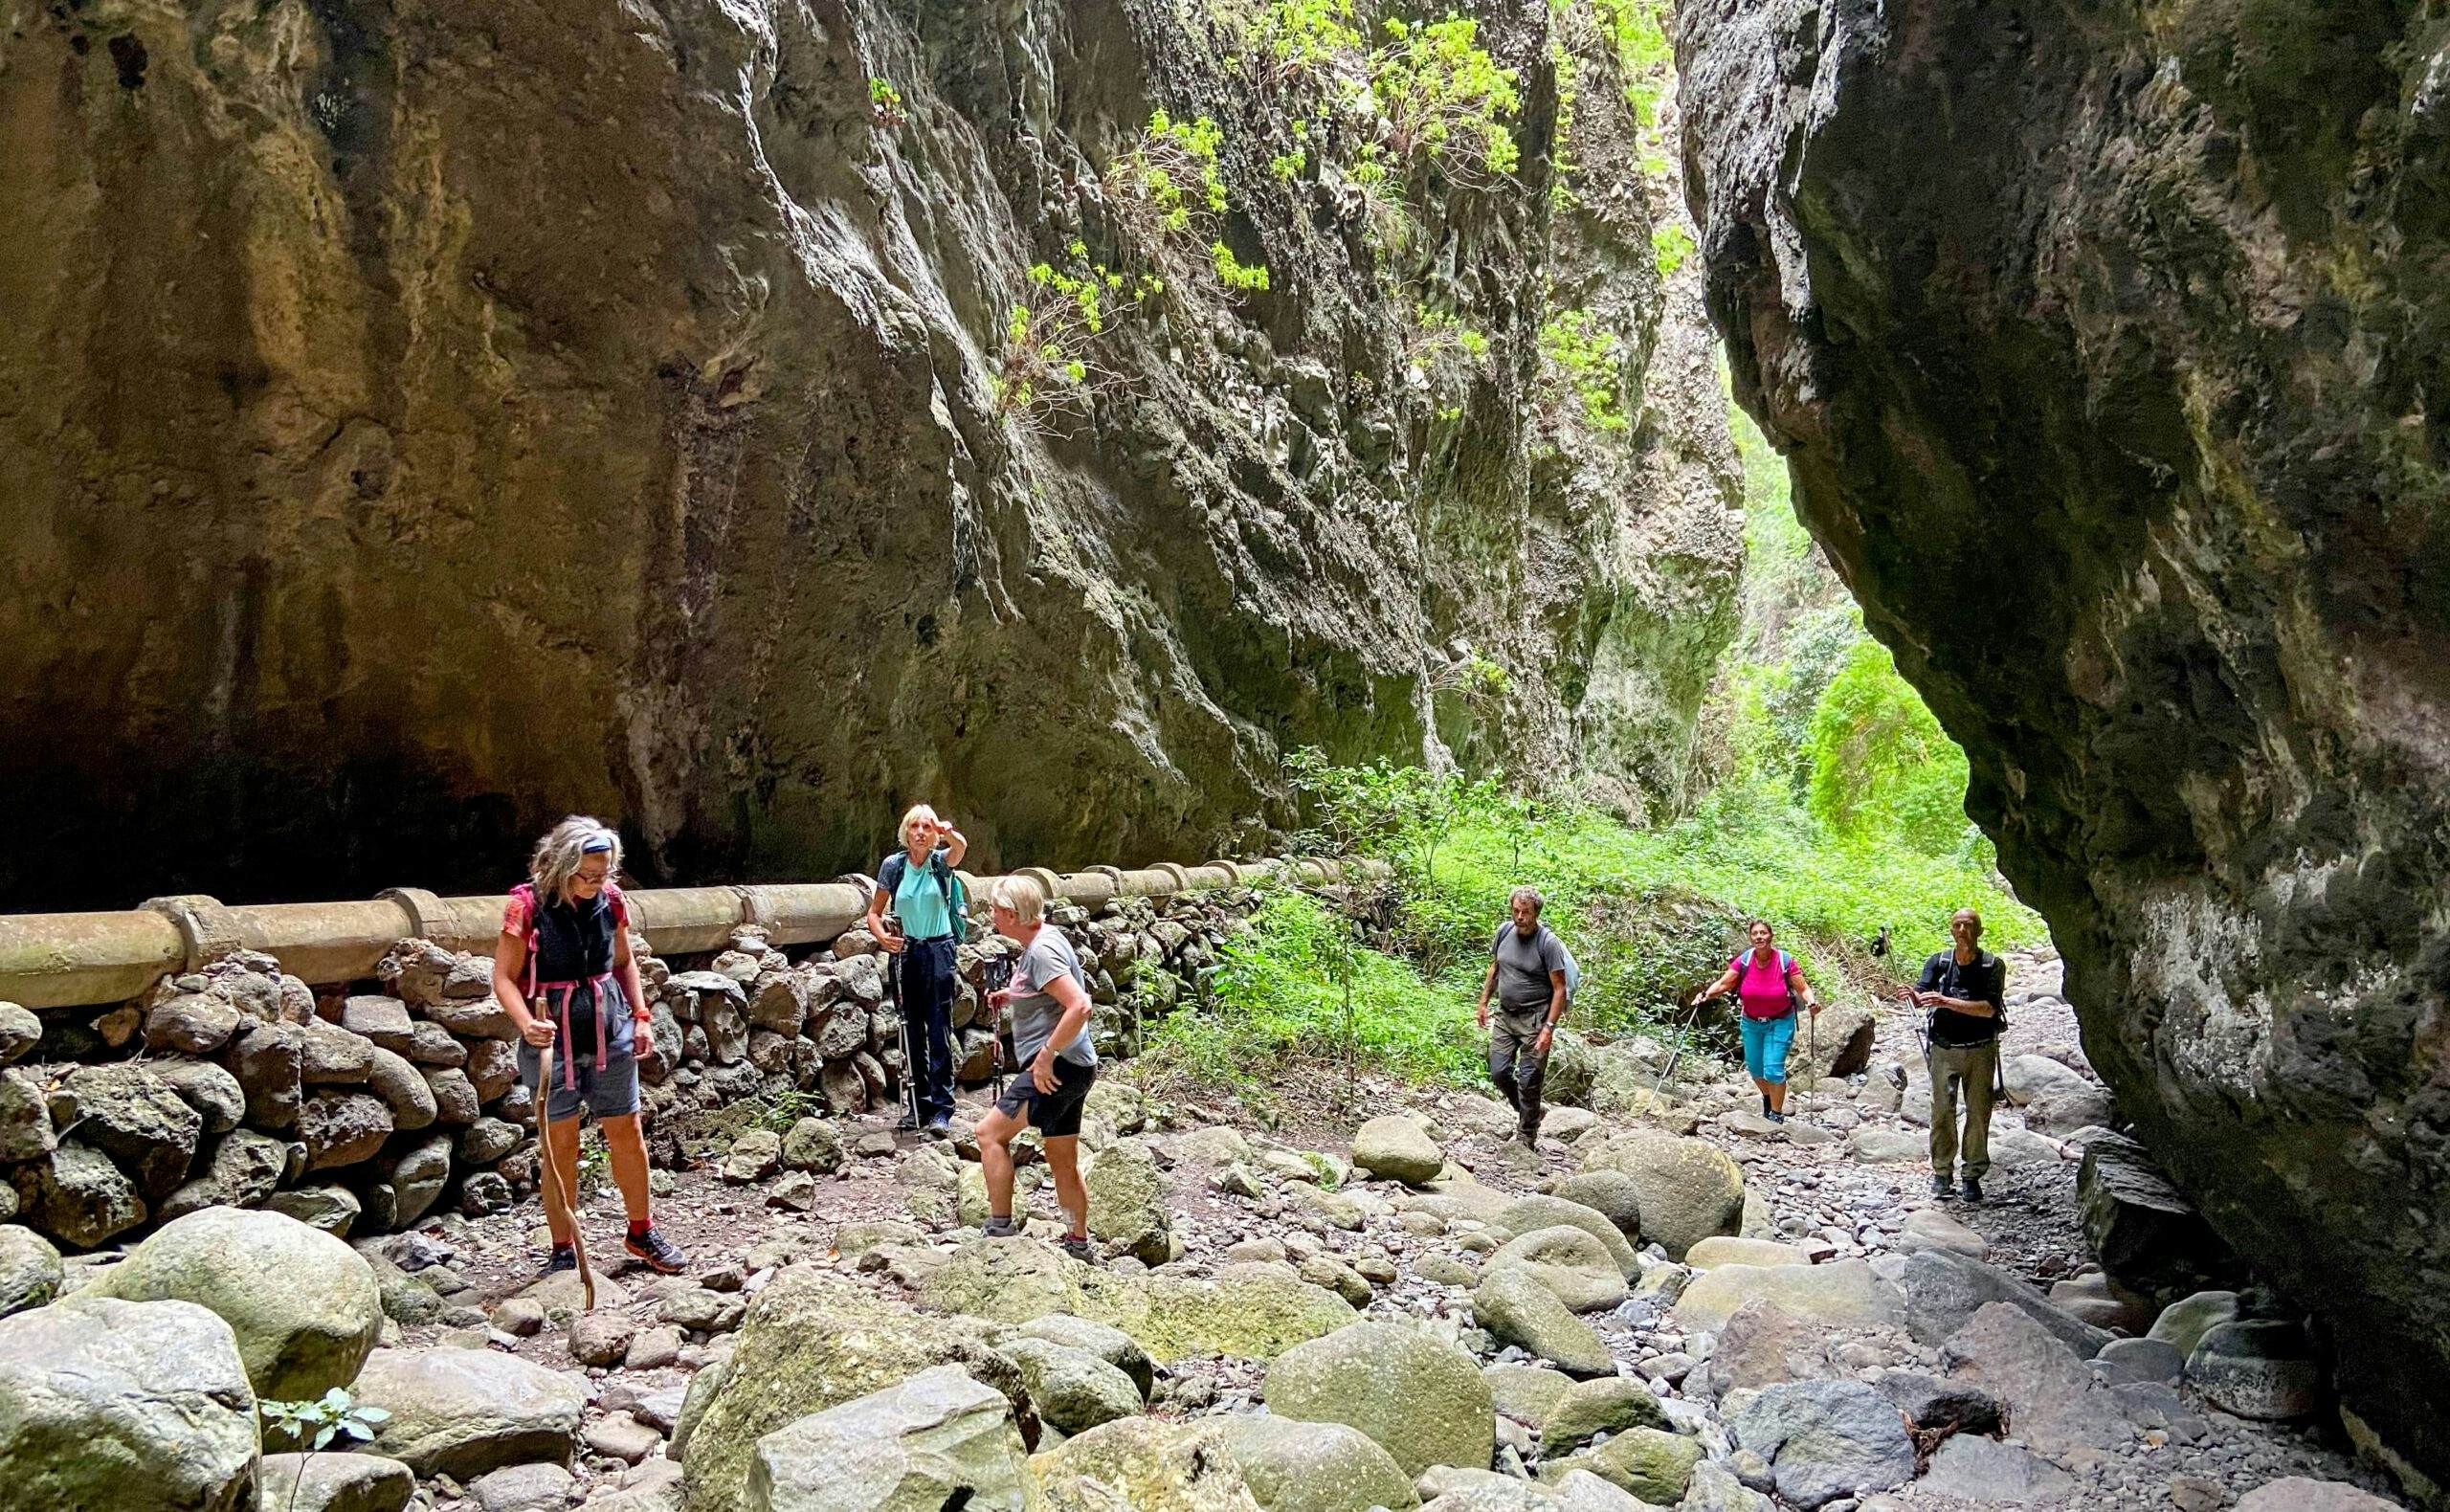 Hiking and exploring in the narrow Barranco de los Cochinos